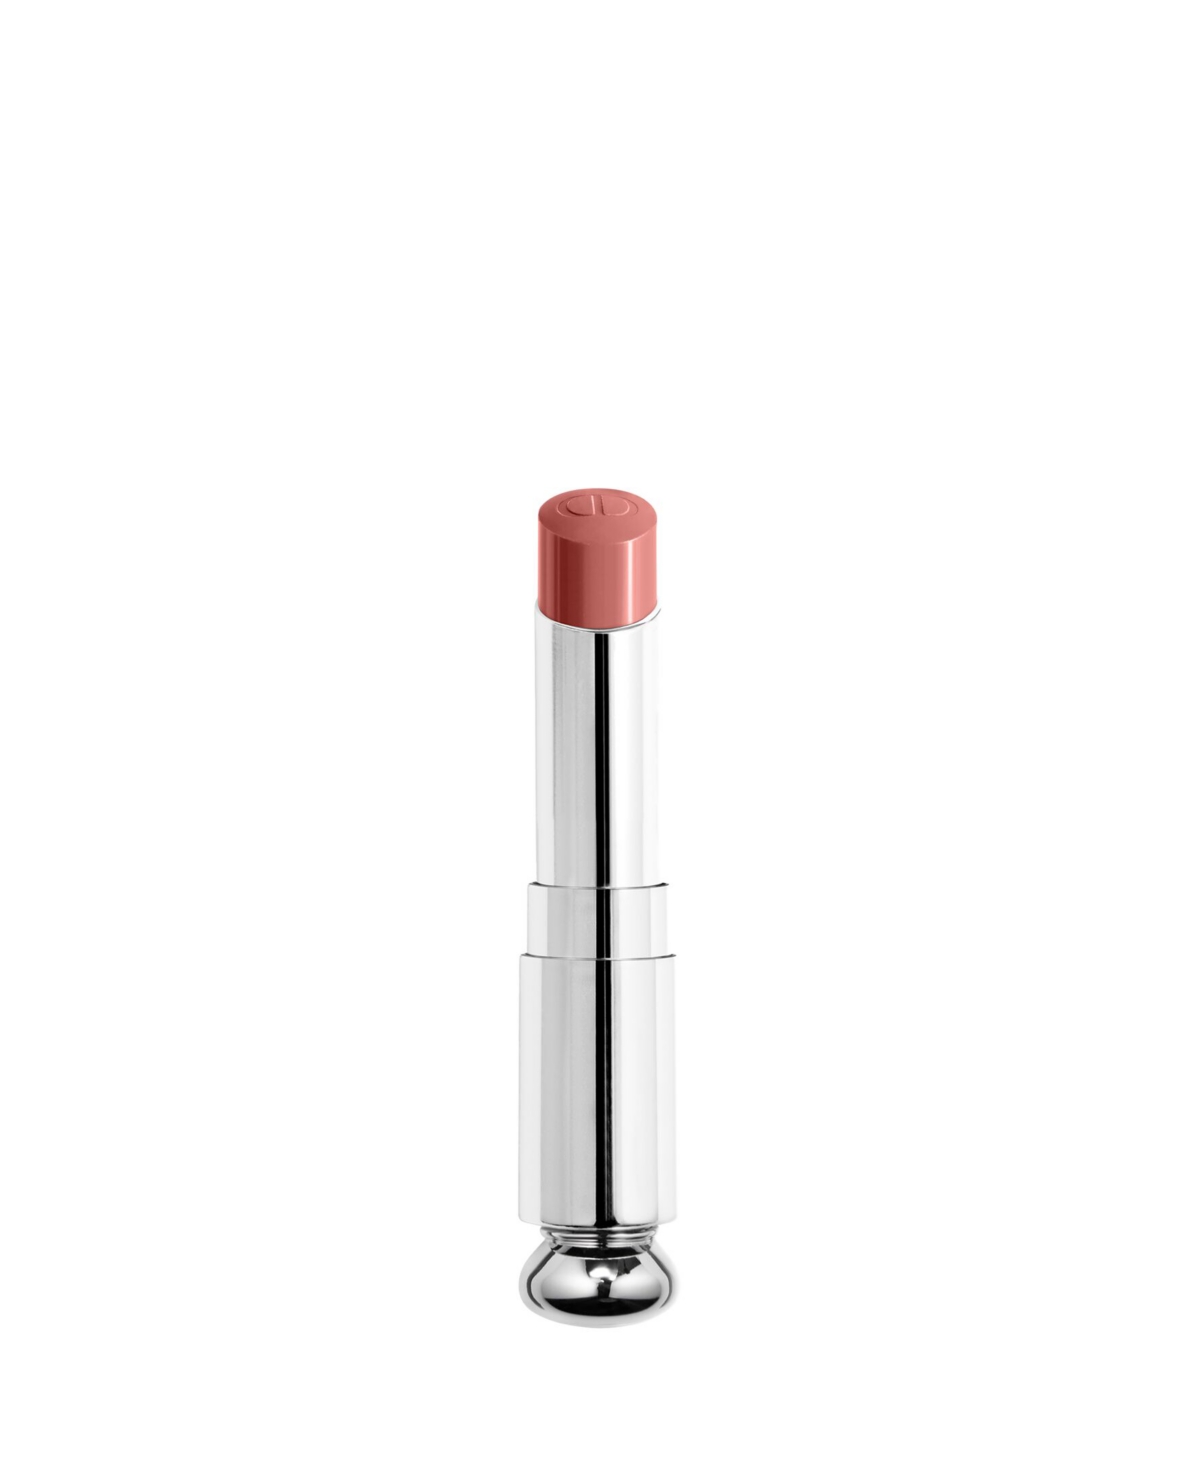 Dior Addict Shine Lipstick Refill In Nude Look (nude)